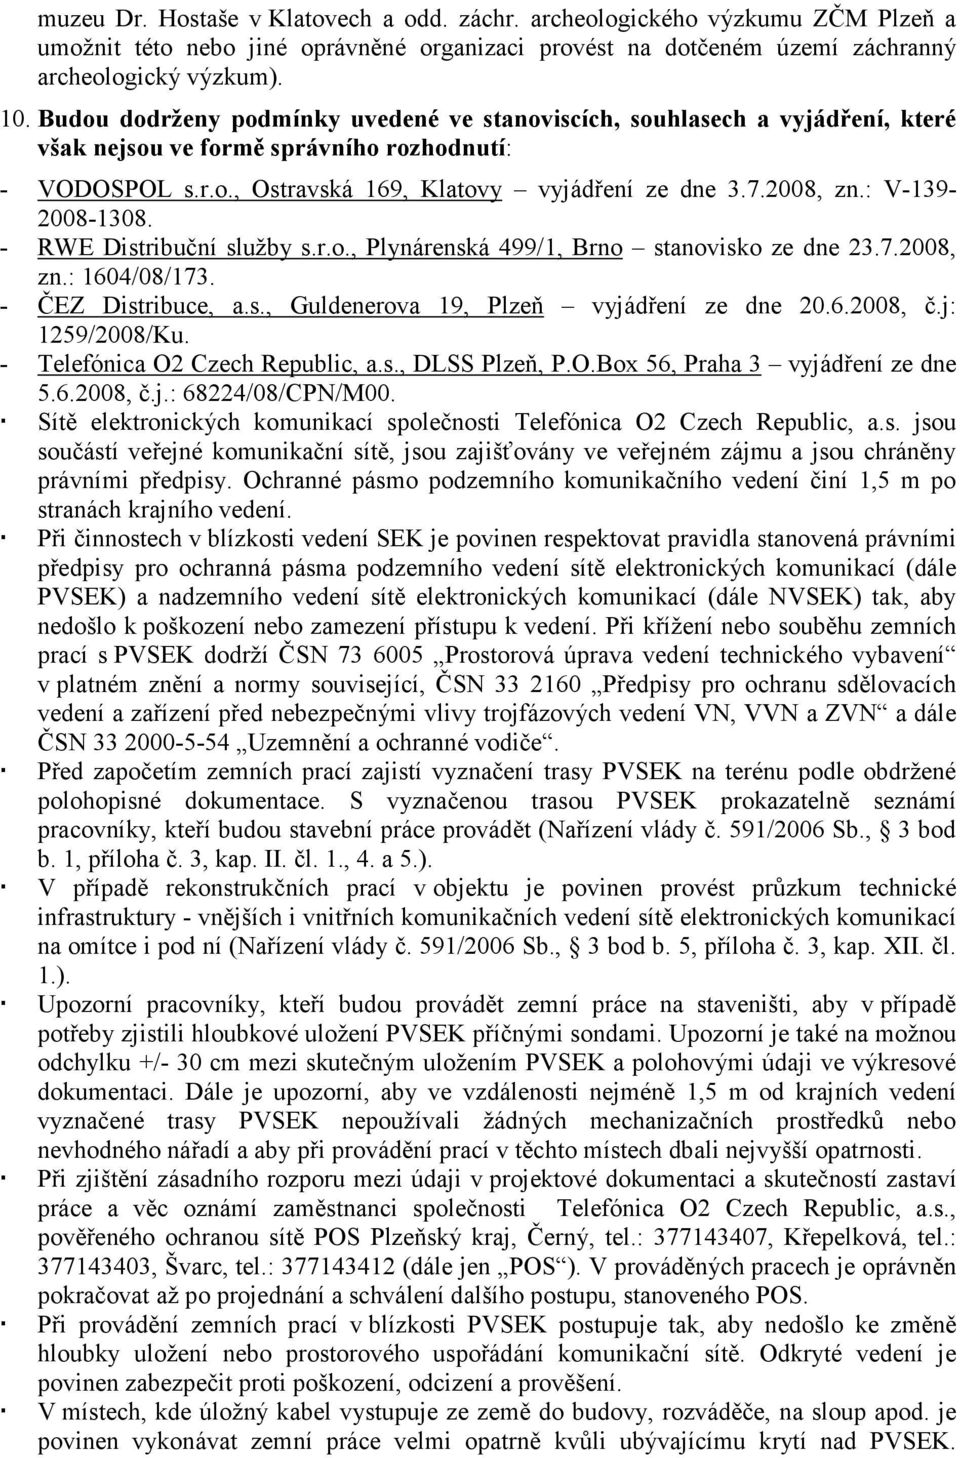 : V-139-2008-1308. - RWE Distribuční služby s.r.o., Plynárenská 499/1, Brno stanovisko ze dne 23.7.2008, zn.: 1604/08/173. - ČEZ Distribuce, a.s., Guldenerova 19, Plzeň vyjádření ze dne 20.6.2008, č.